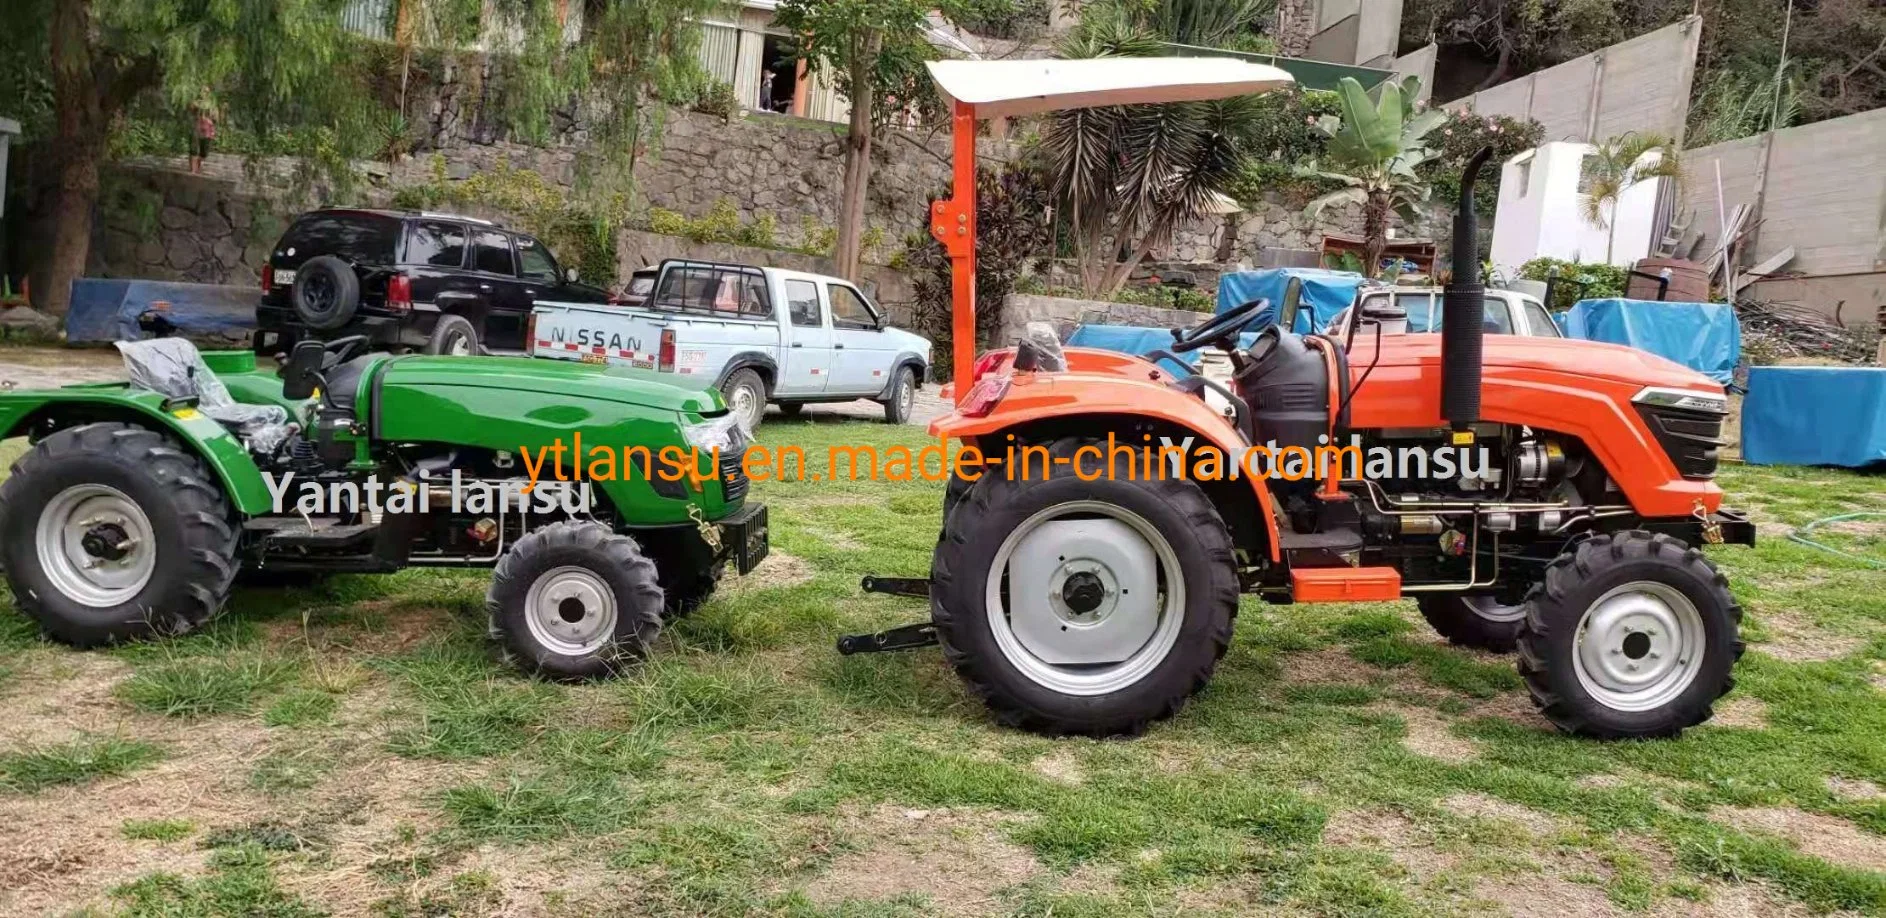 Acheter des tracteurs agricoles chinois de 12HP, 15HP, 18HP, 20HP, compacts et petits, pour l'agriculture, le jardinage, avec des roues 4X4, à prix abordable.